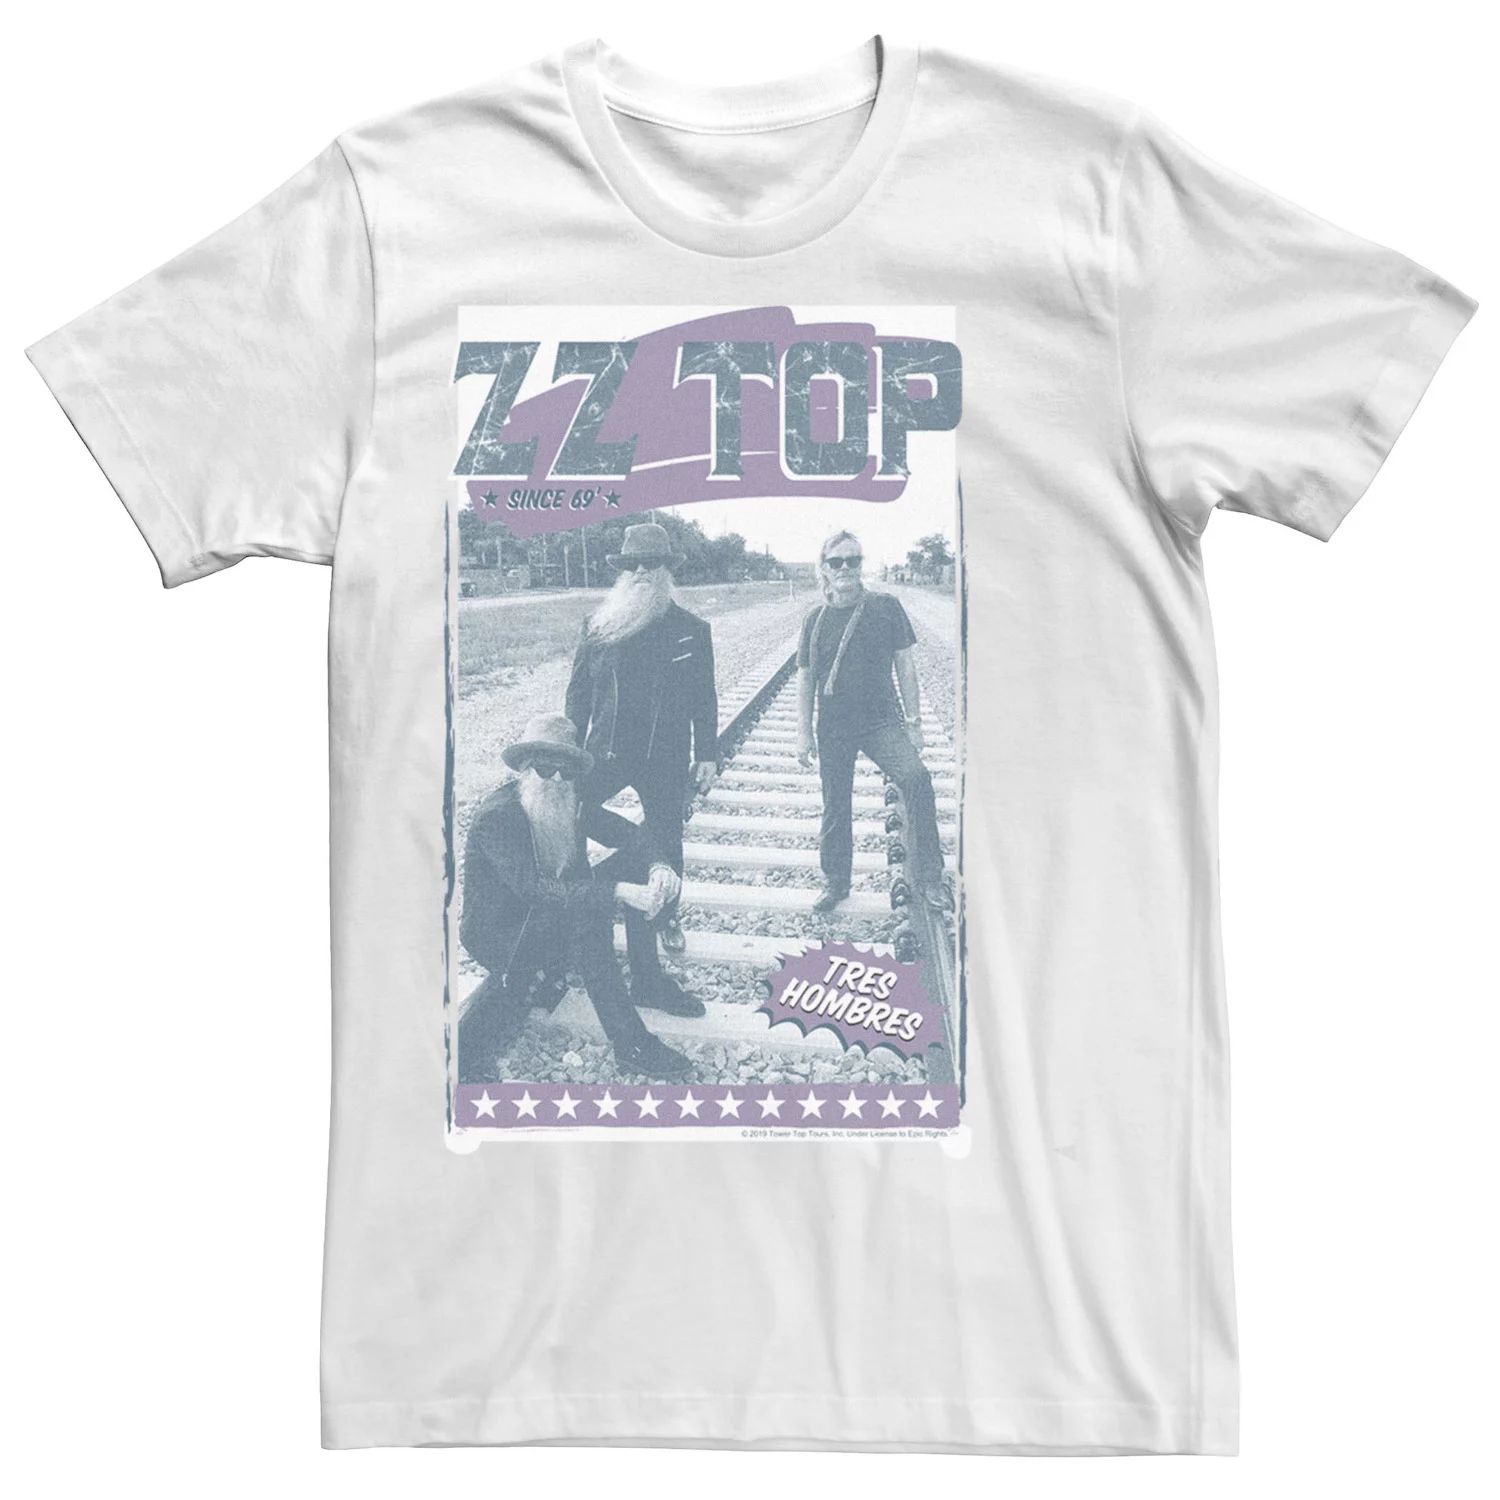 Мужская футболка с длинными рукавами и графическим рисунком ZZ Top Tres Hombres Railroad Licensed Character рок wm tres hombres 180 gram remastered